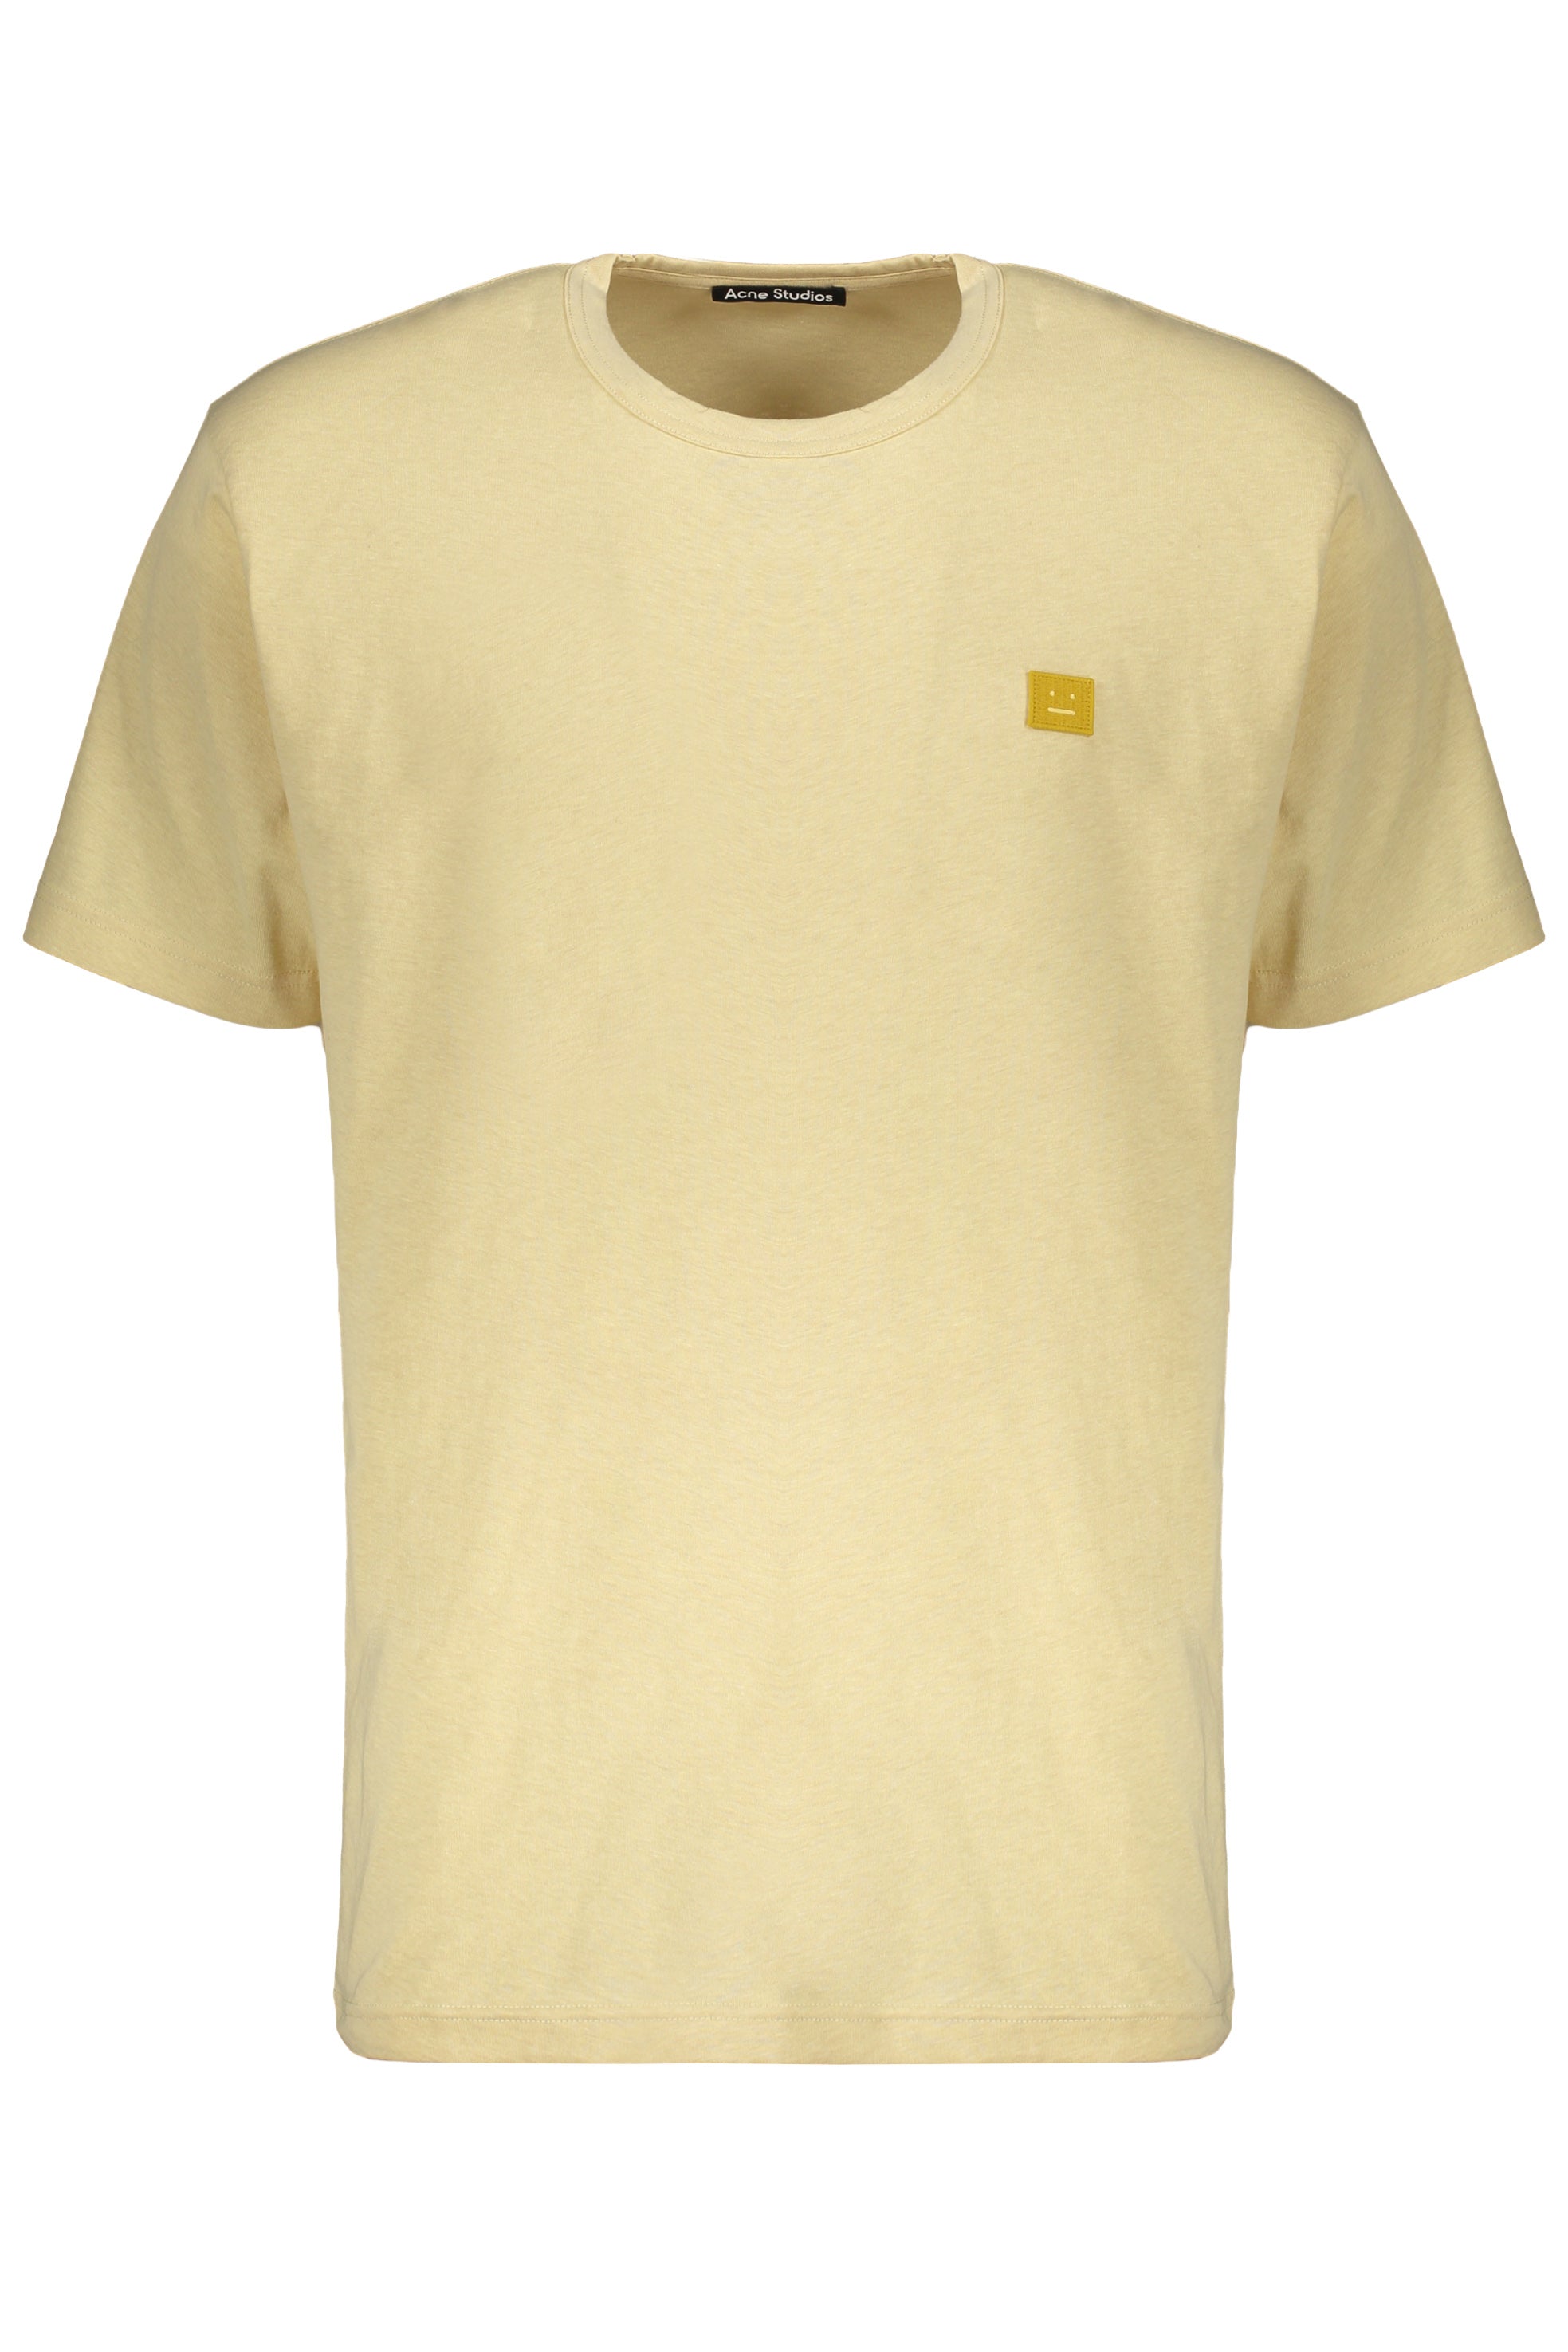 Acne-Studios-OUTLET-SALE-Cotton-T-shirt-Shirts-L-ARCHIVE-COLLECTION.jpg